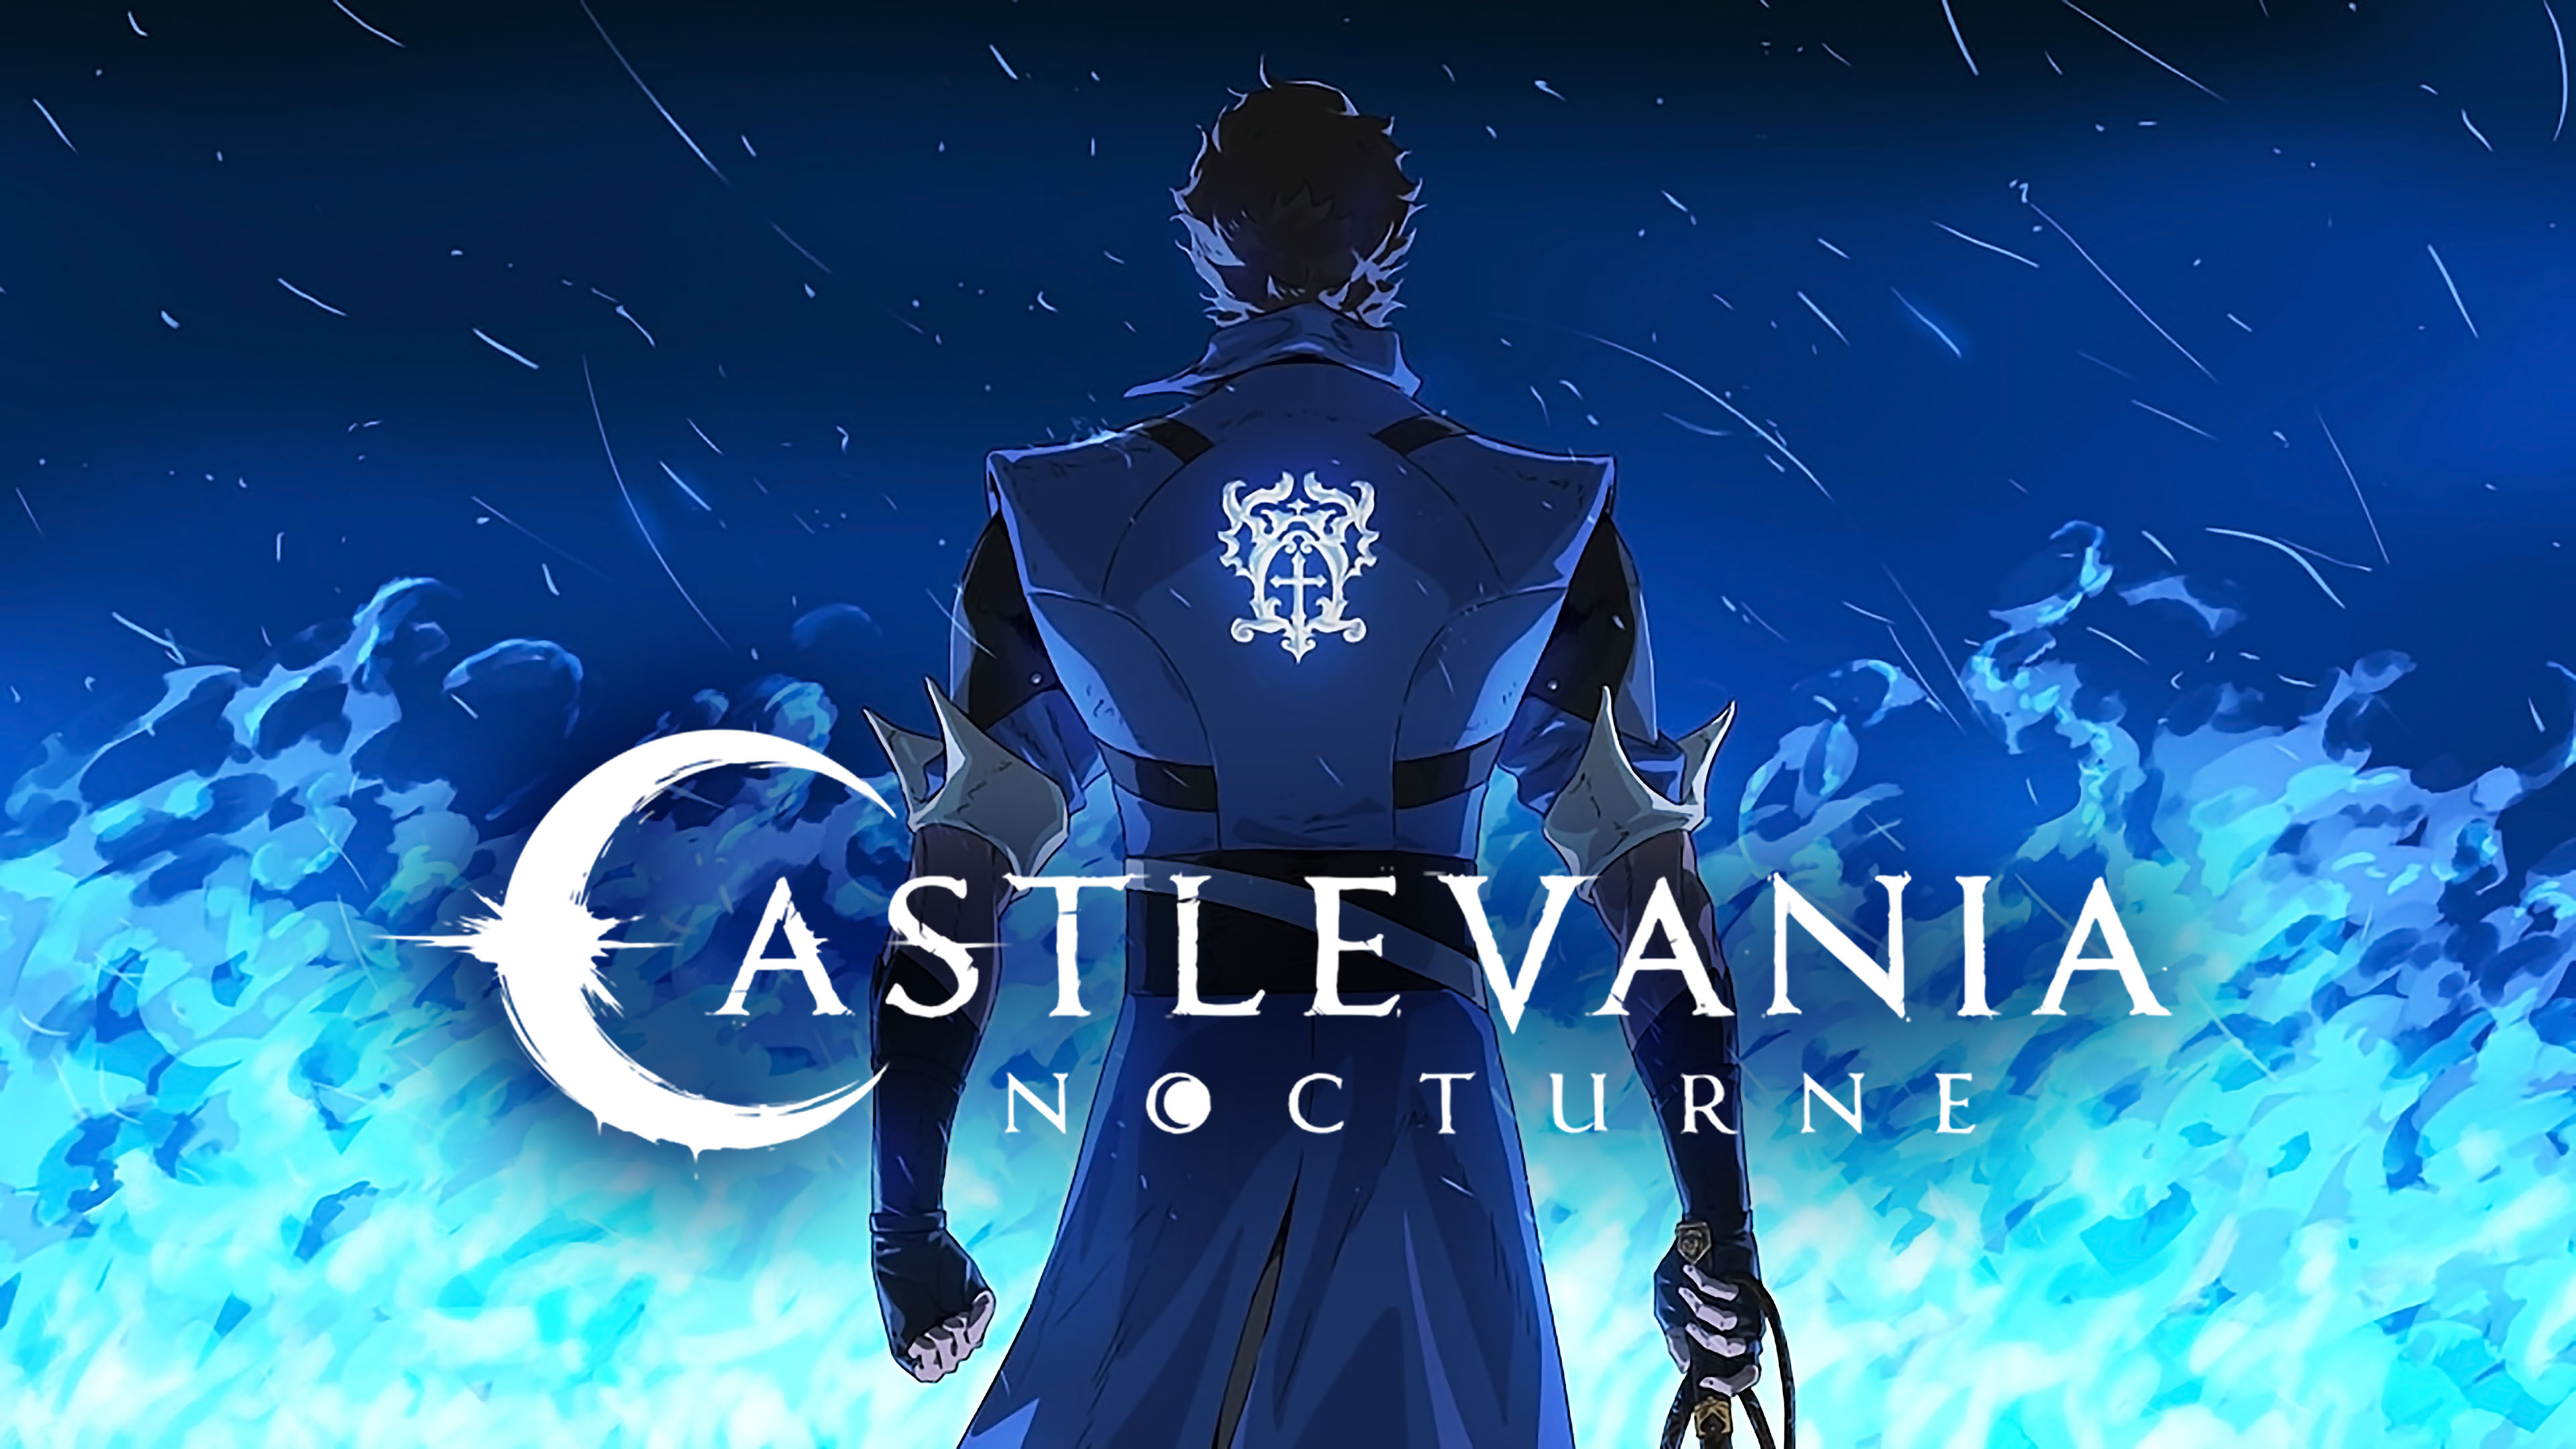 Het tweede seizoen van Castlevania: Nocturne is al in ontwikkeling